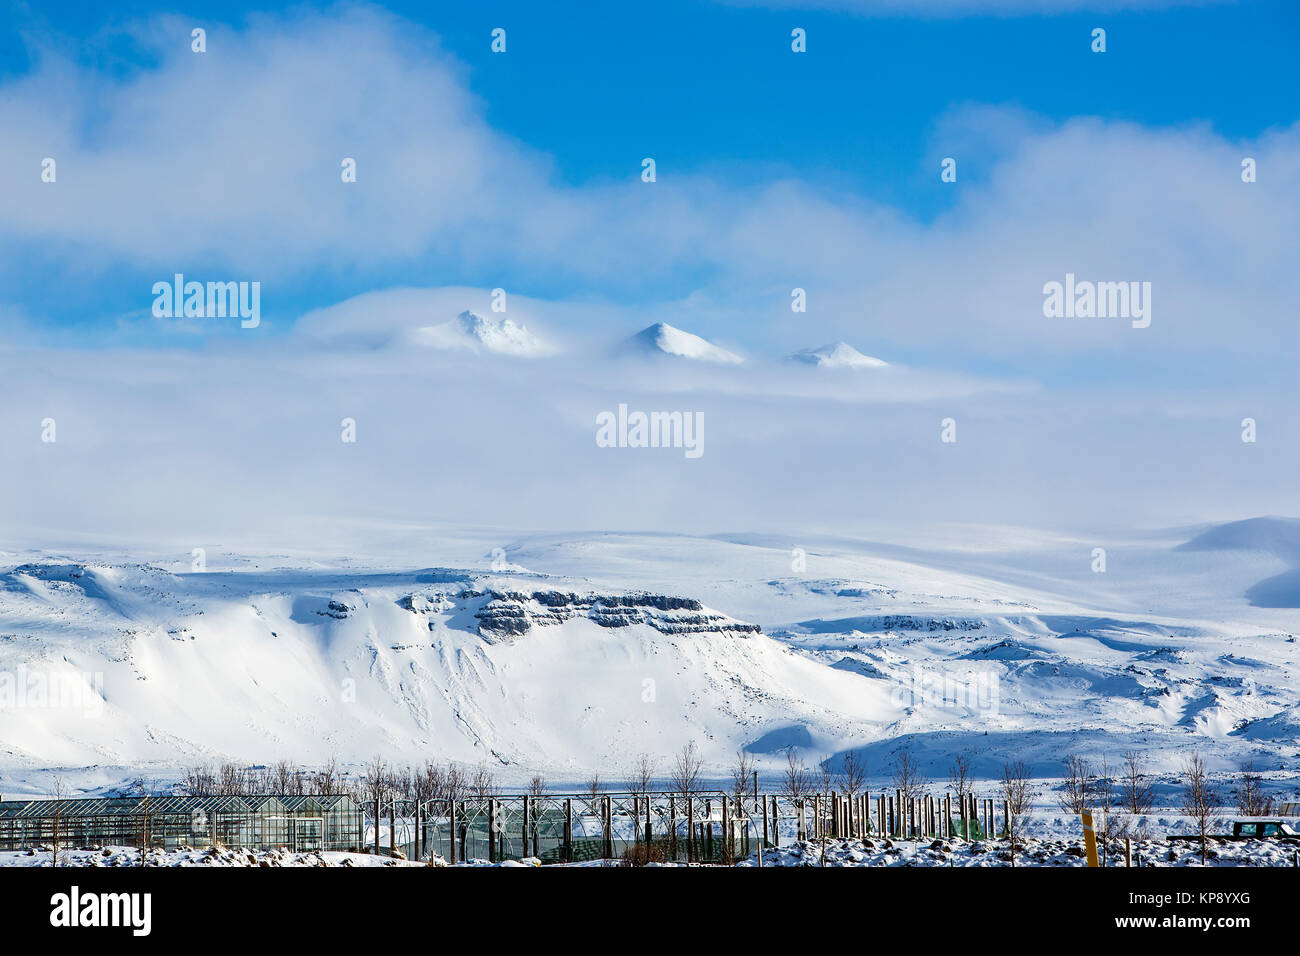 Paysage de montagne enneigée, péninsule Snaefellsness, Islande Banque D'Images